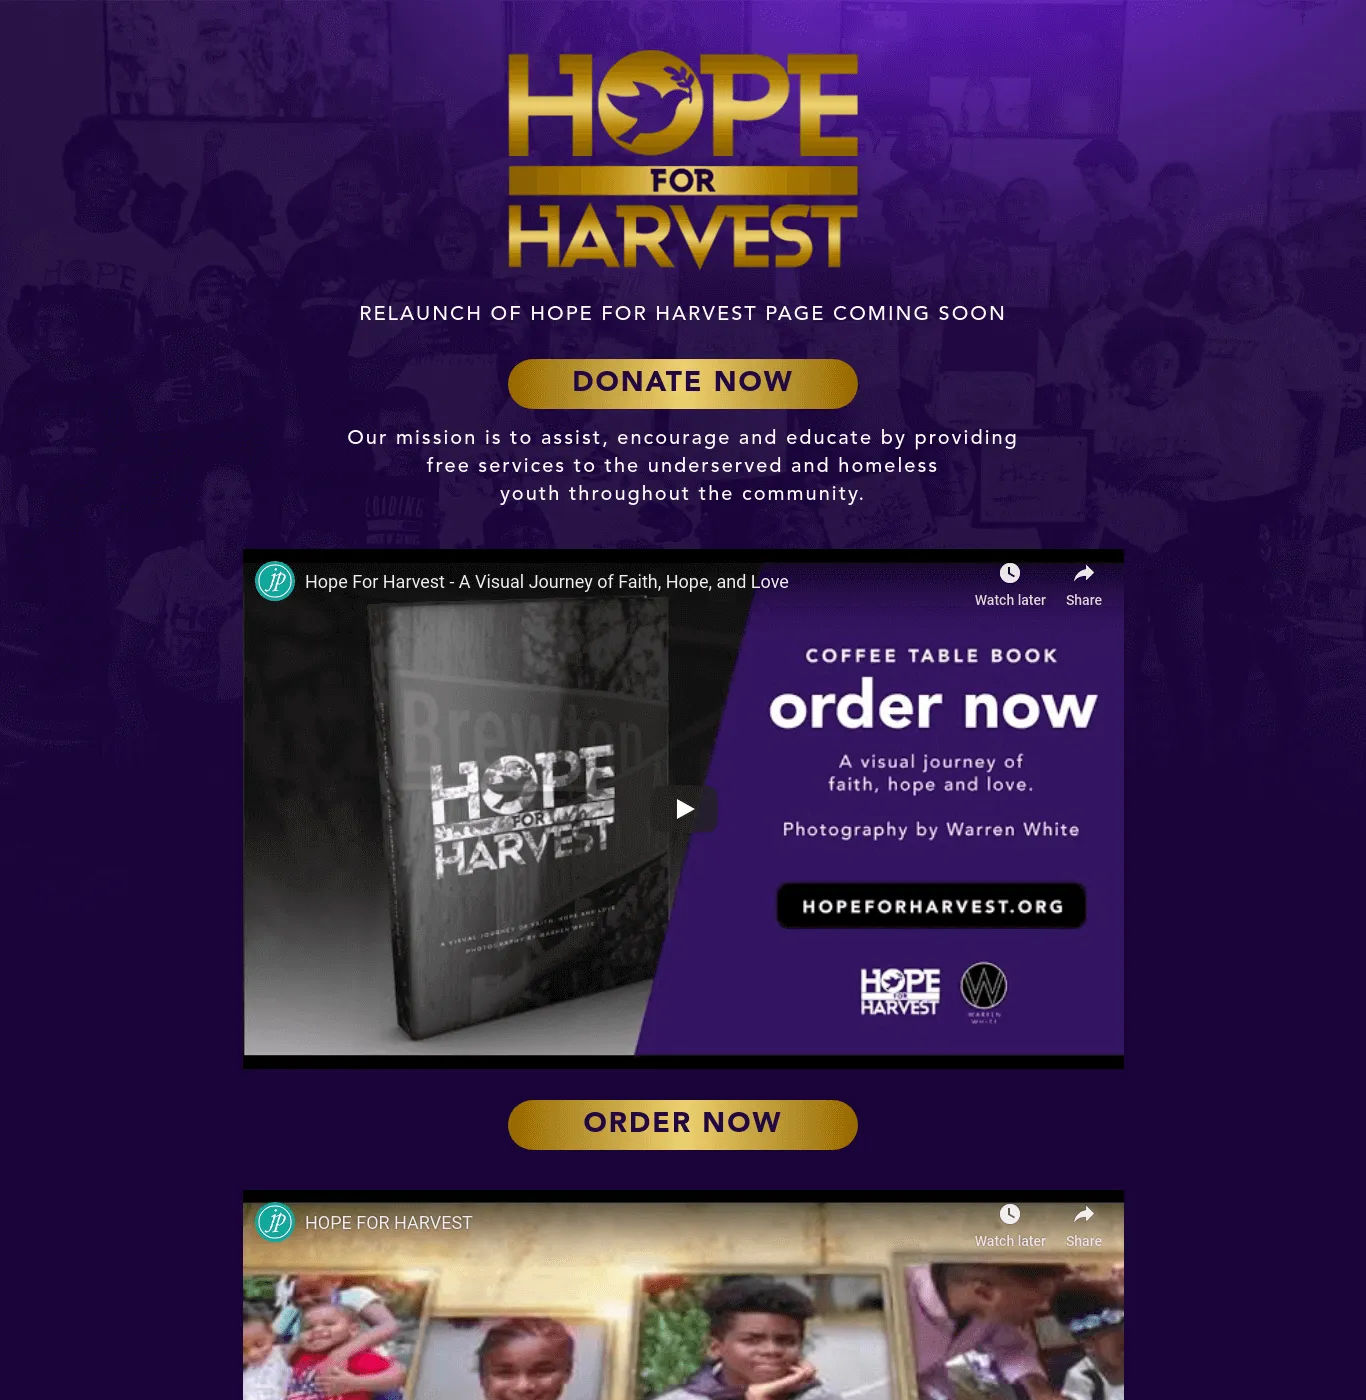 Hopeforharvest